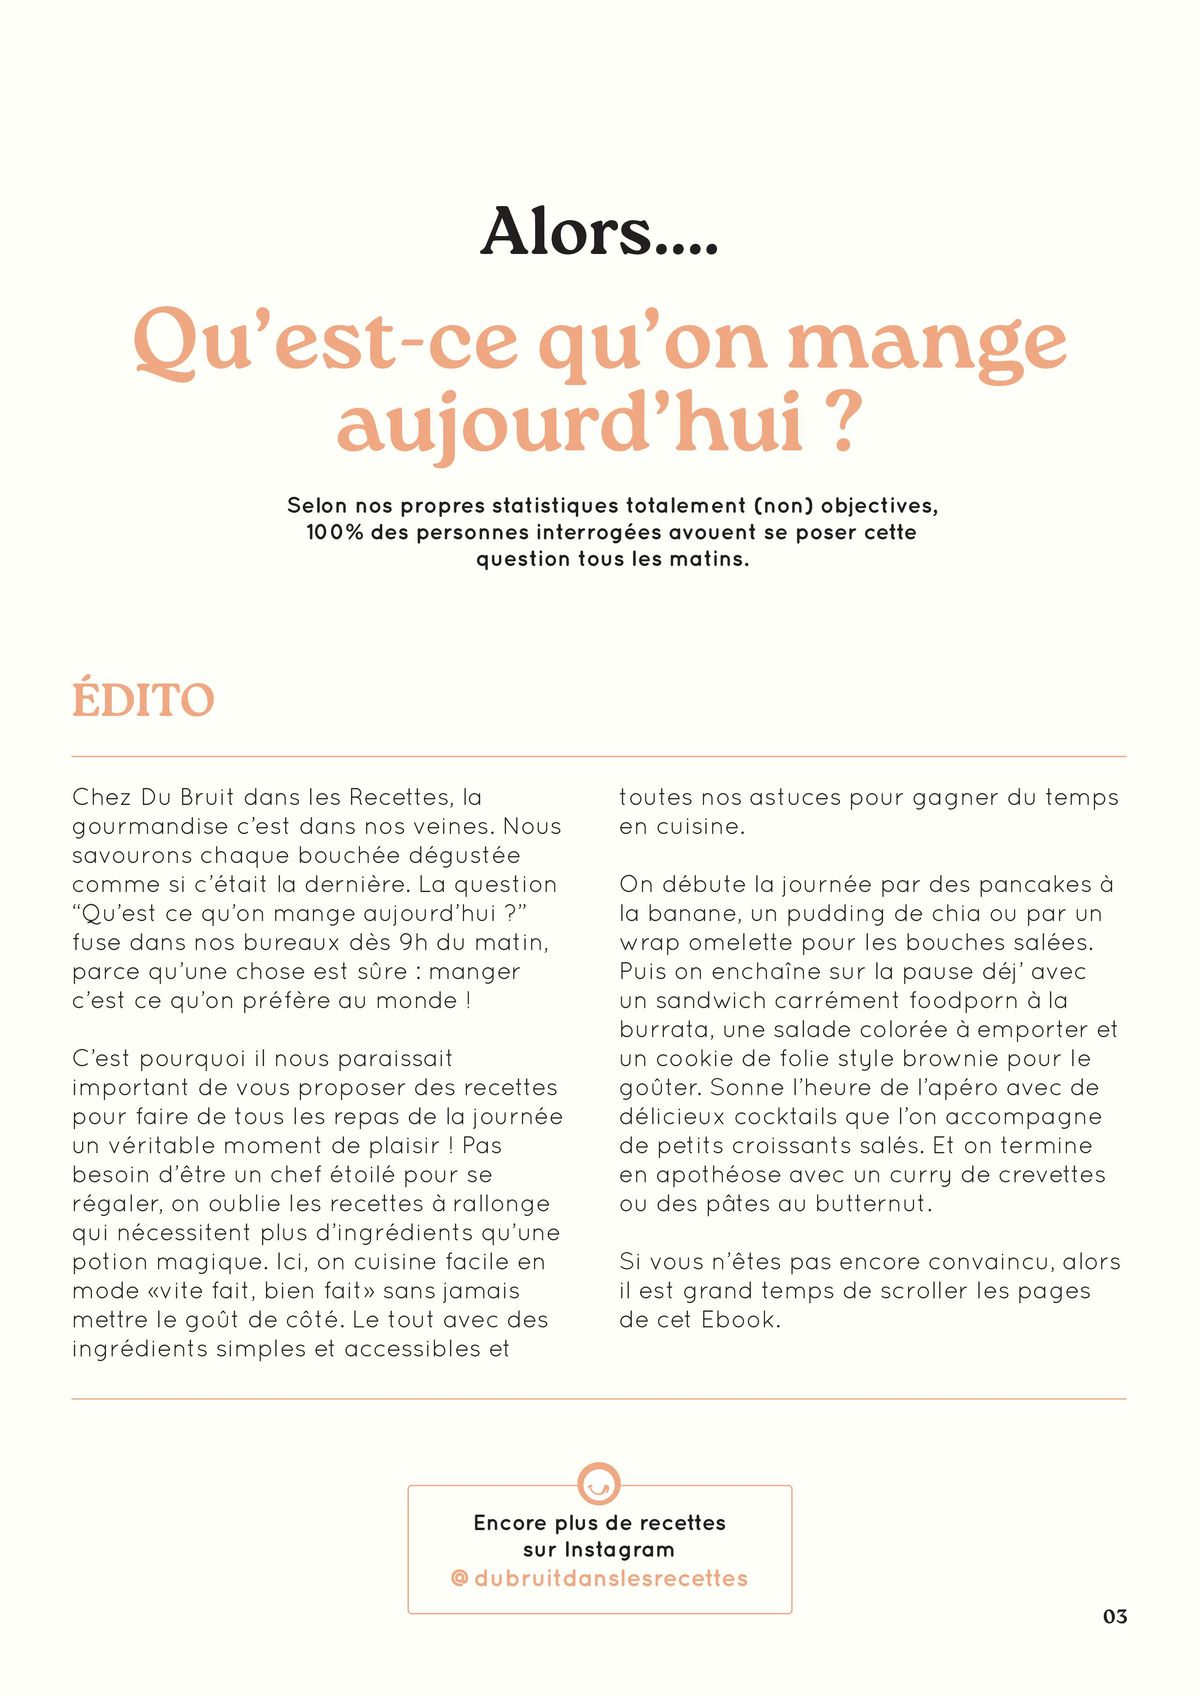 Catalogue Du Bruit dans la Cuisine Recettes, page 00003